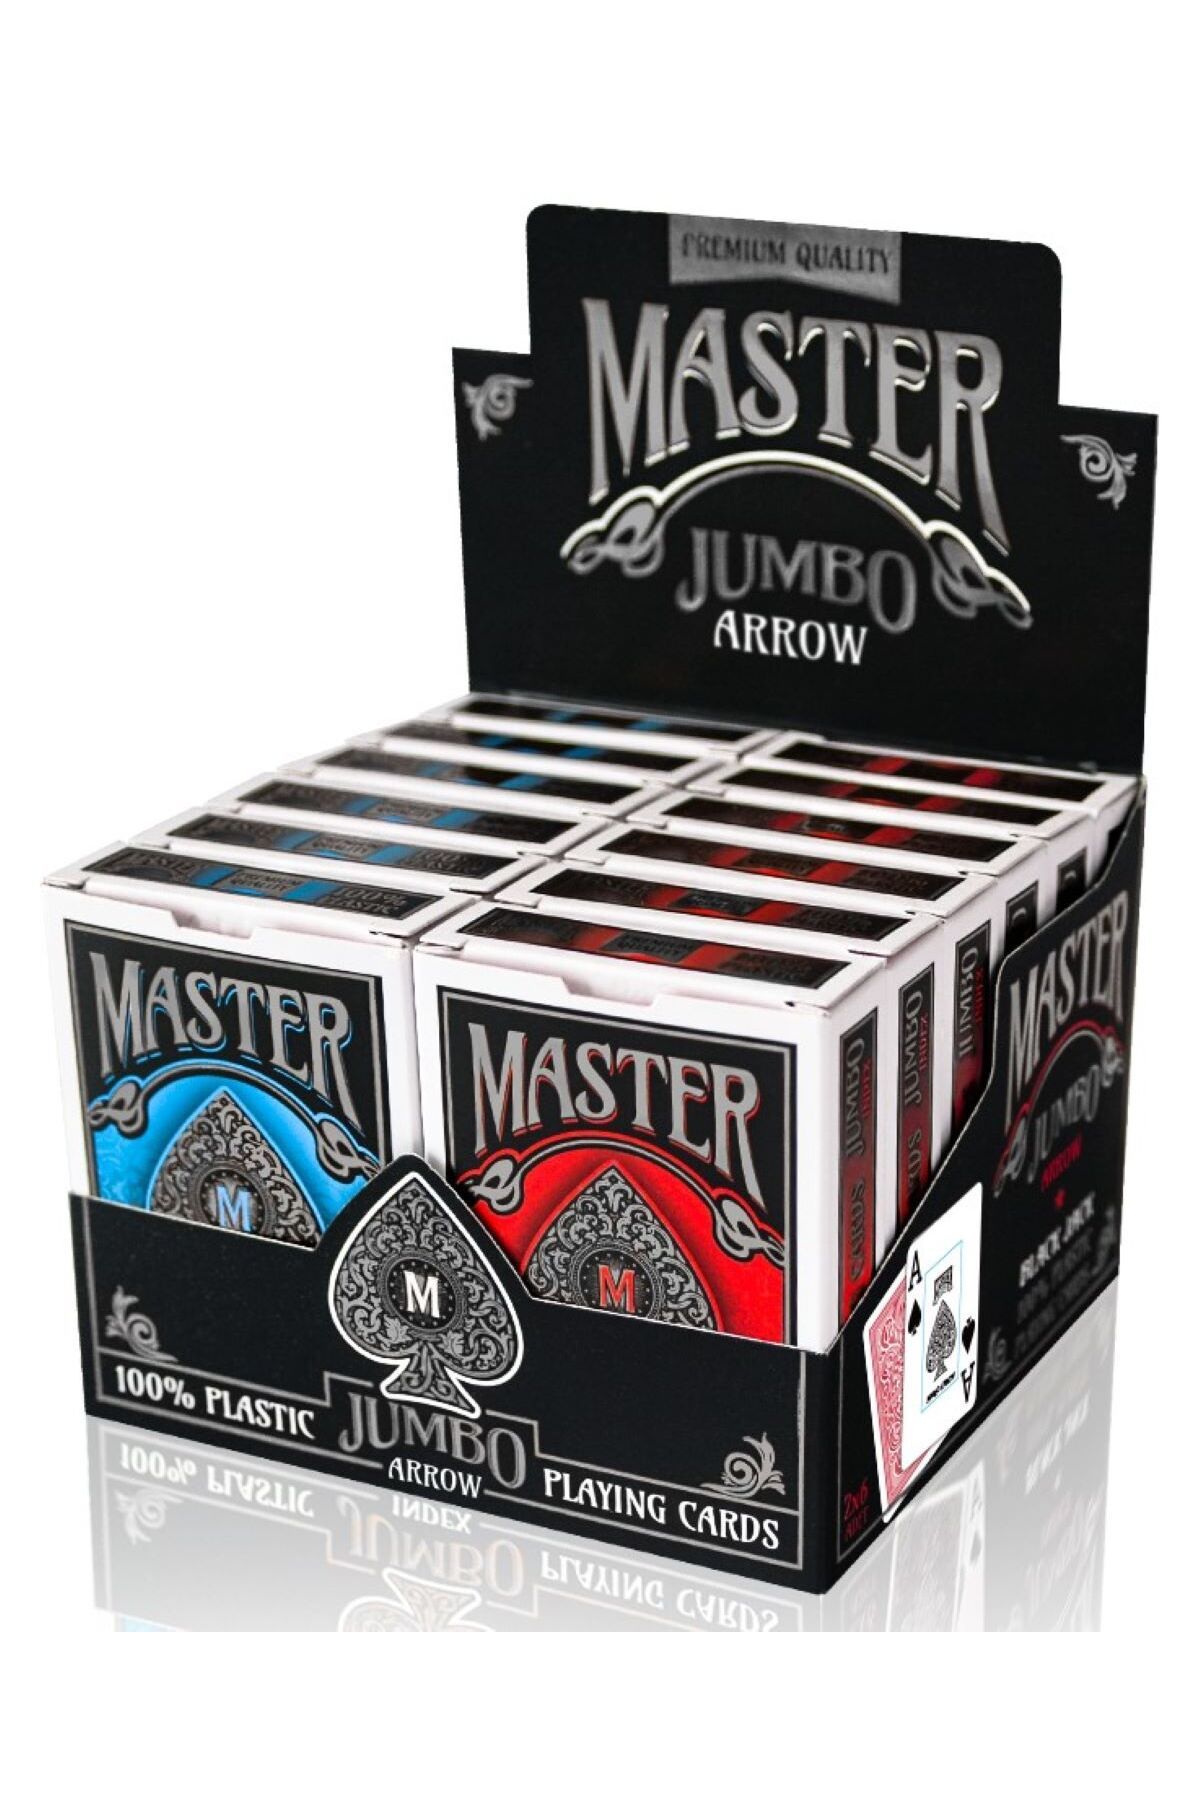 Ks Games Master BJ Jumbo Arrow Düzine 2 Deste Plastik Poker Oyun Kağıdı (Kırmızı,Mavi)